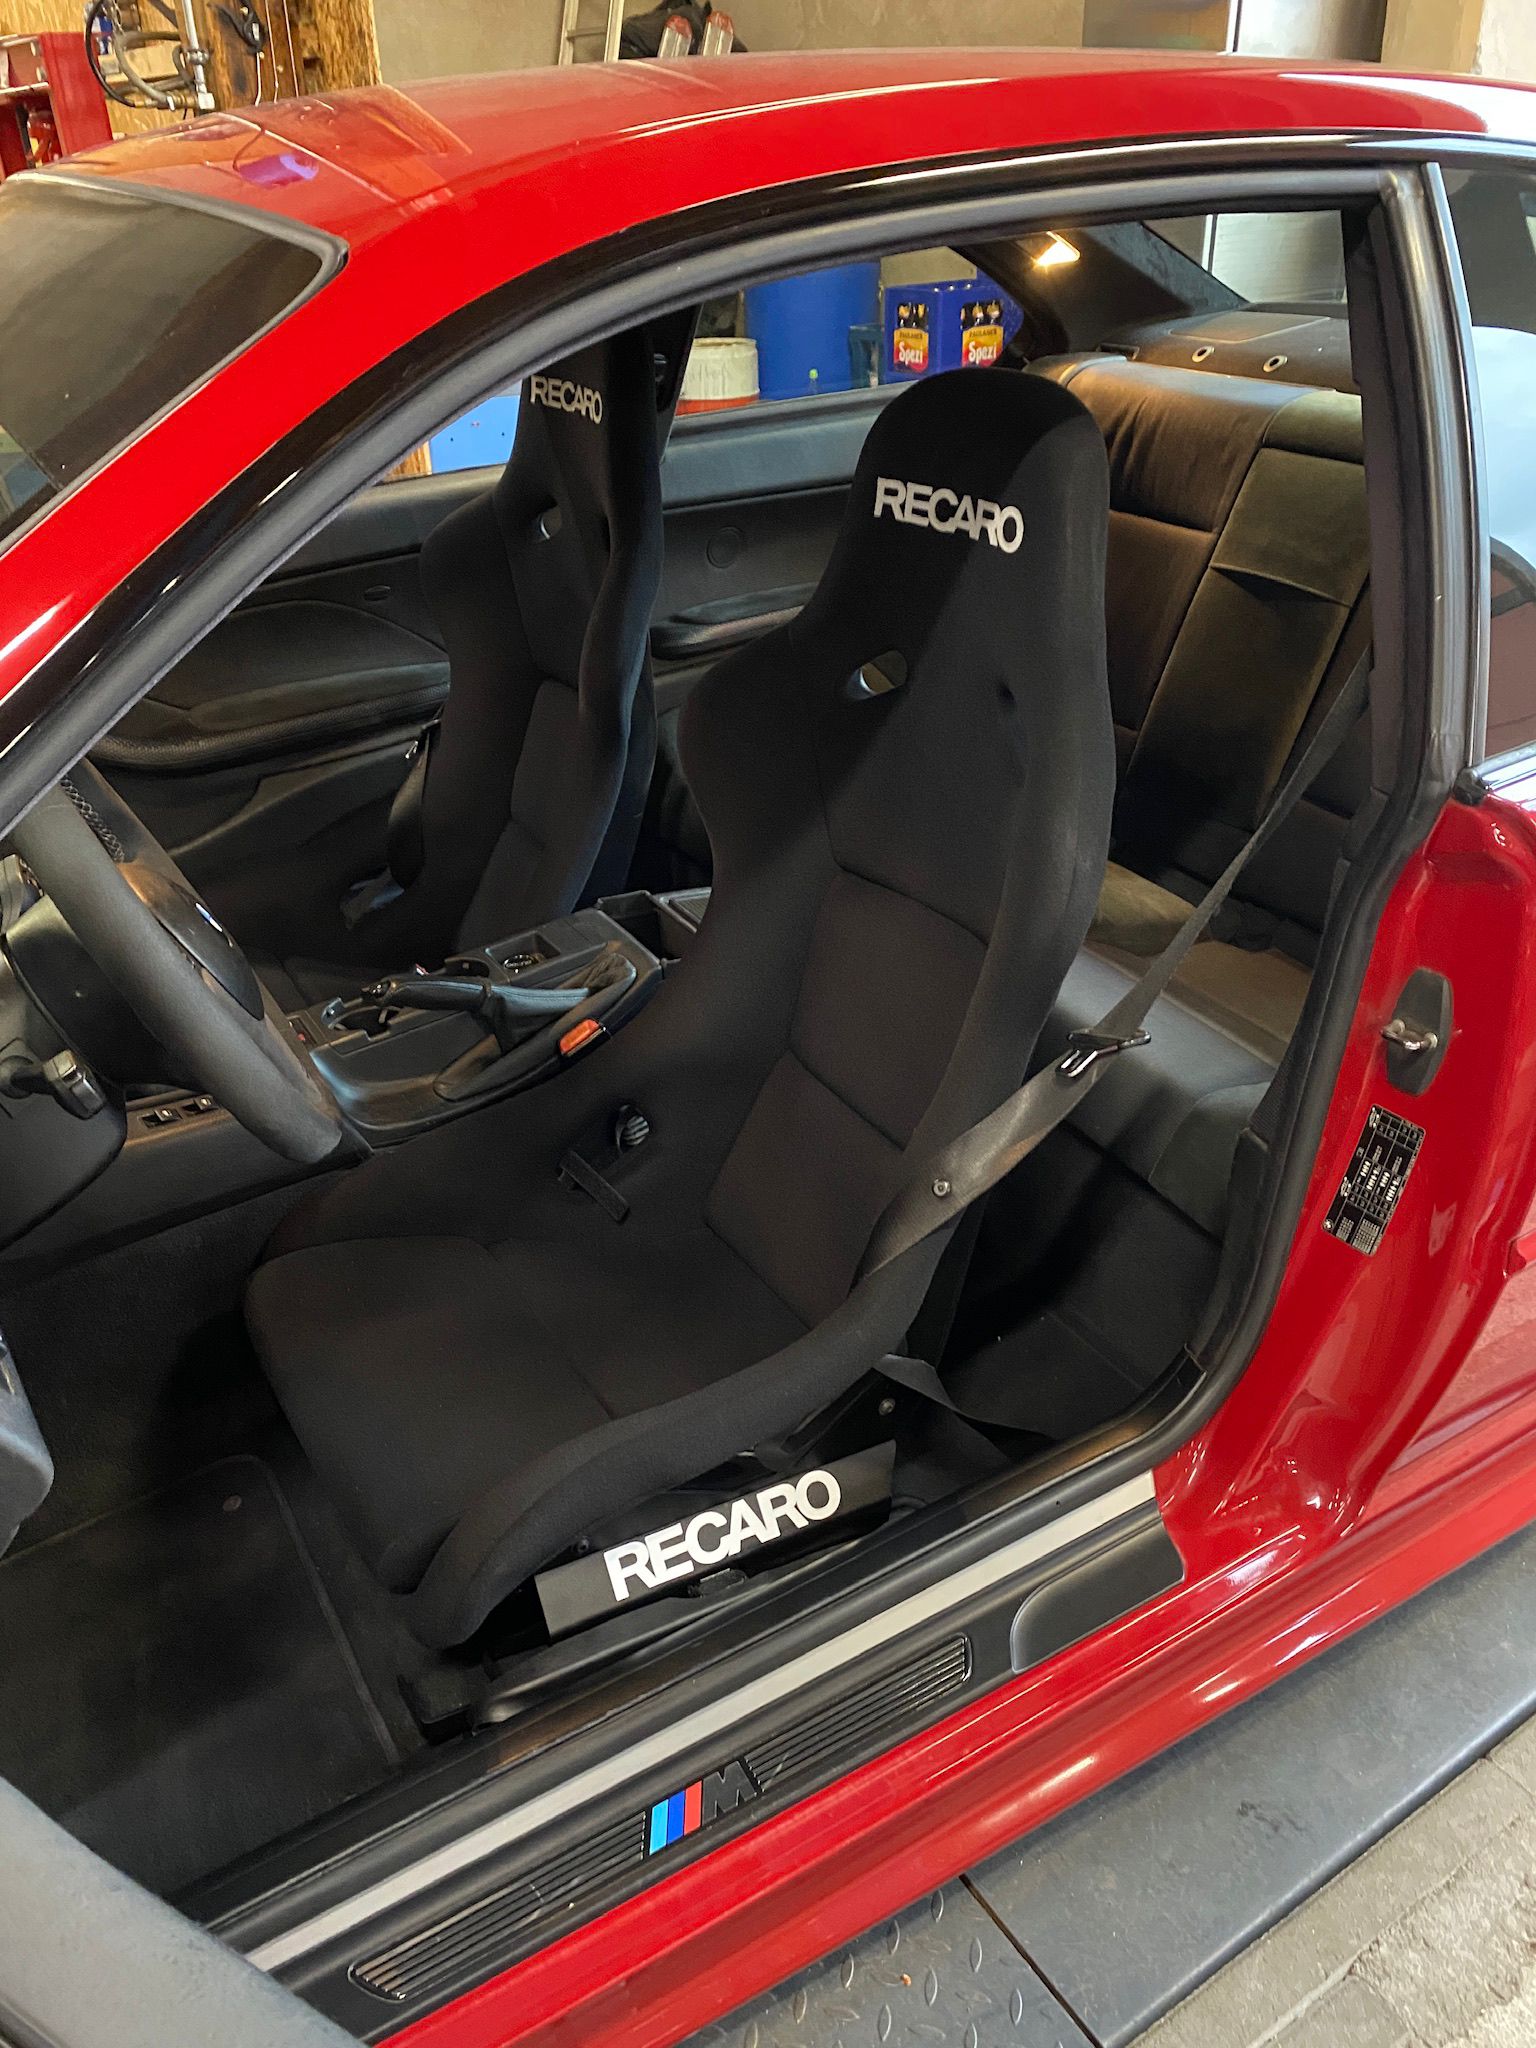 TEUTSCHER AUTOSPORT Sitzkonsole Sitzadapter BMW E46 Z4 für RECARO Pole Position (Stahl)